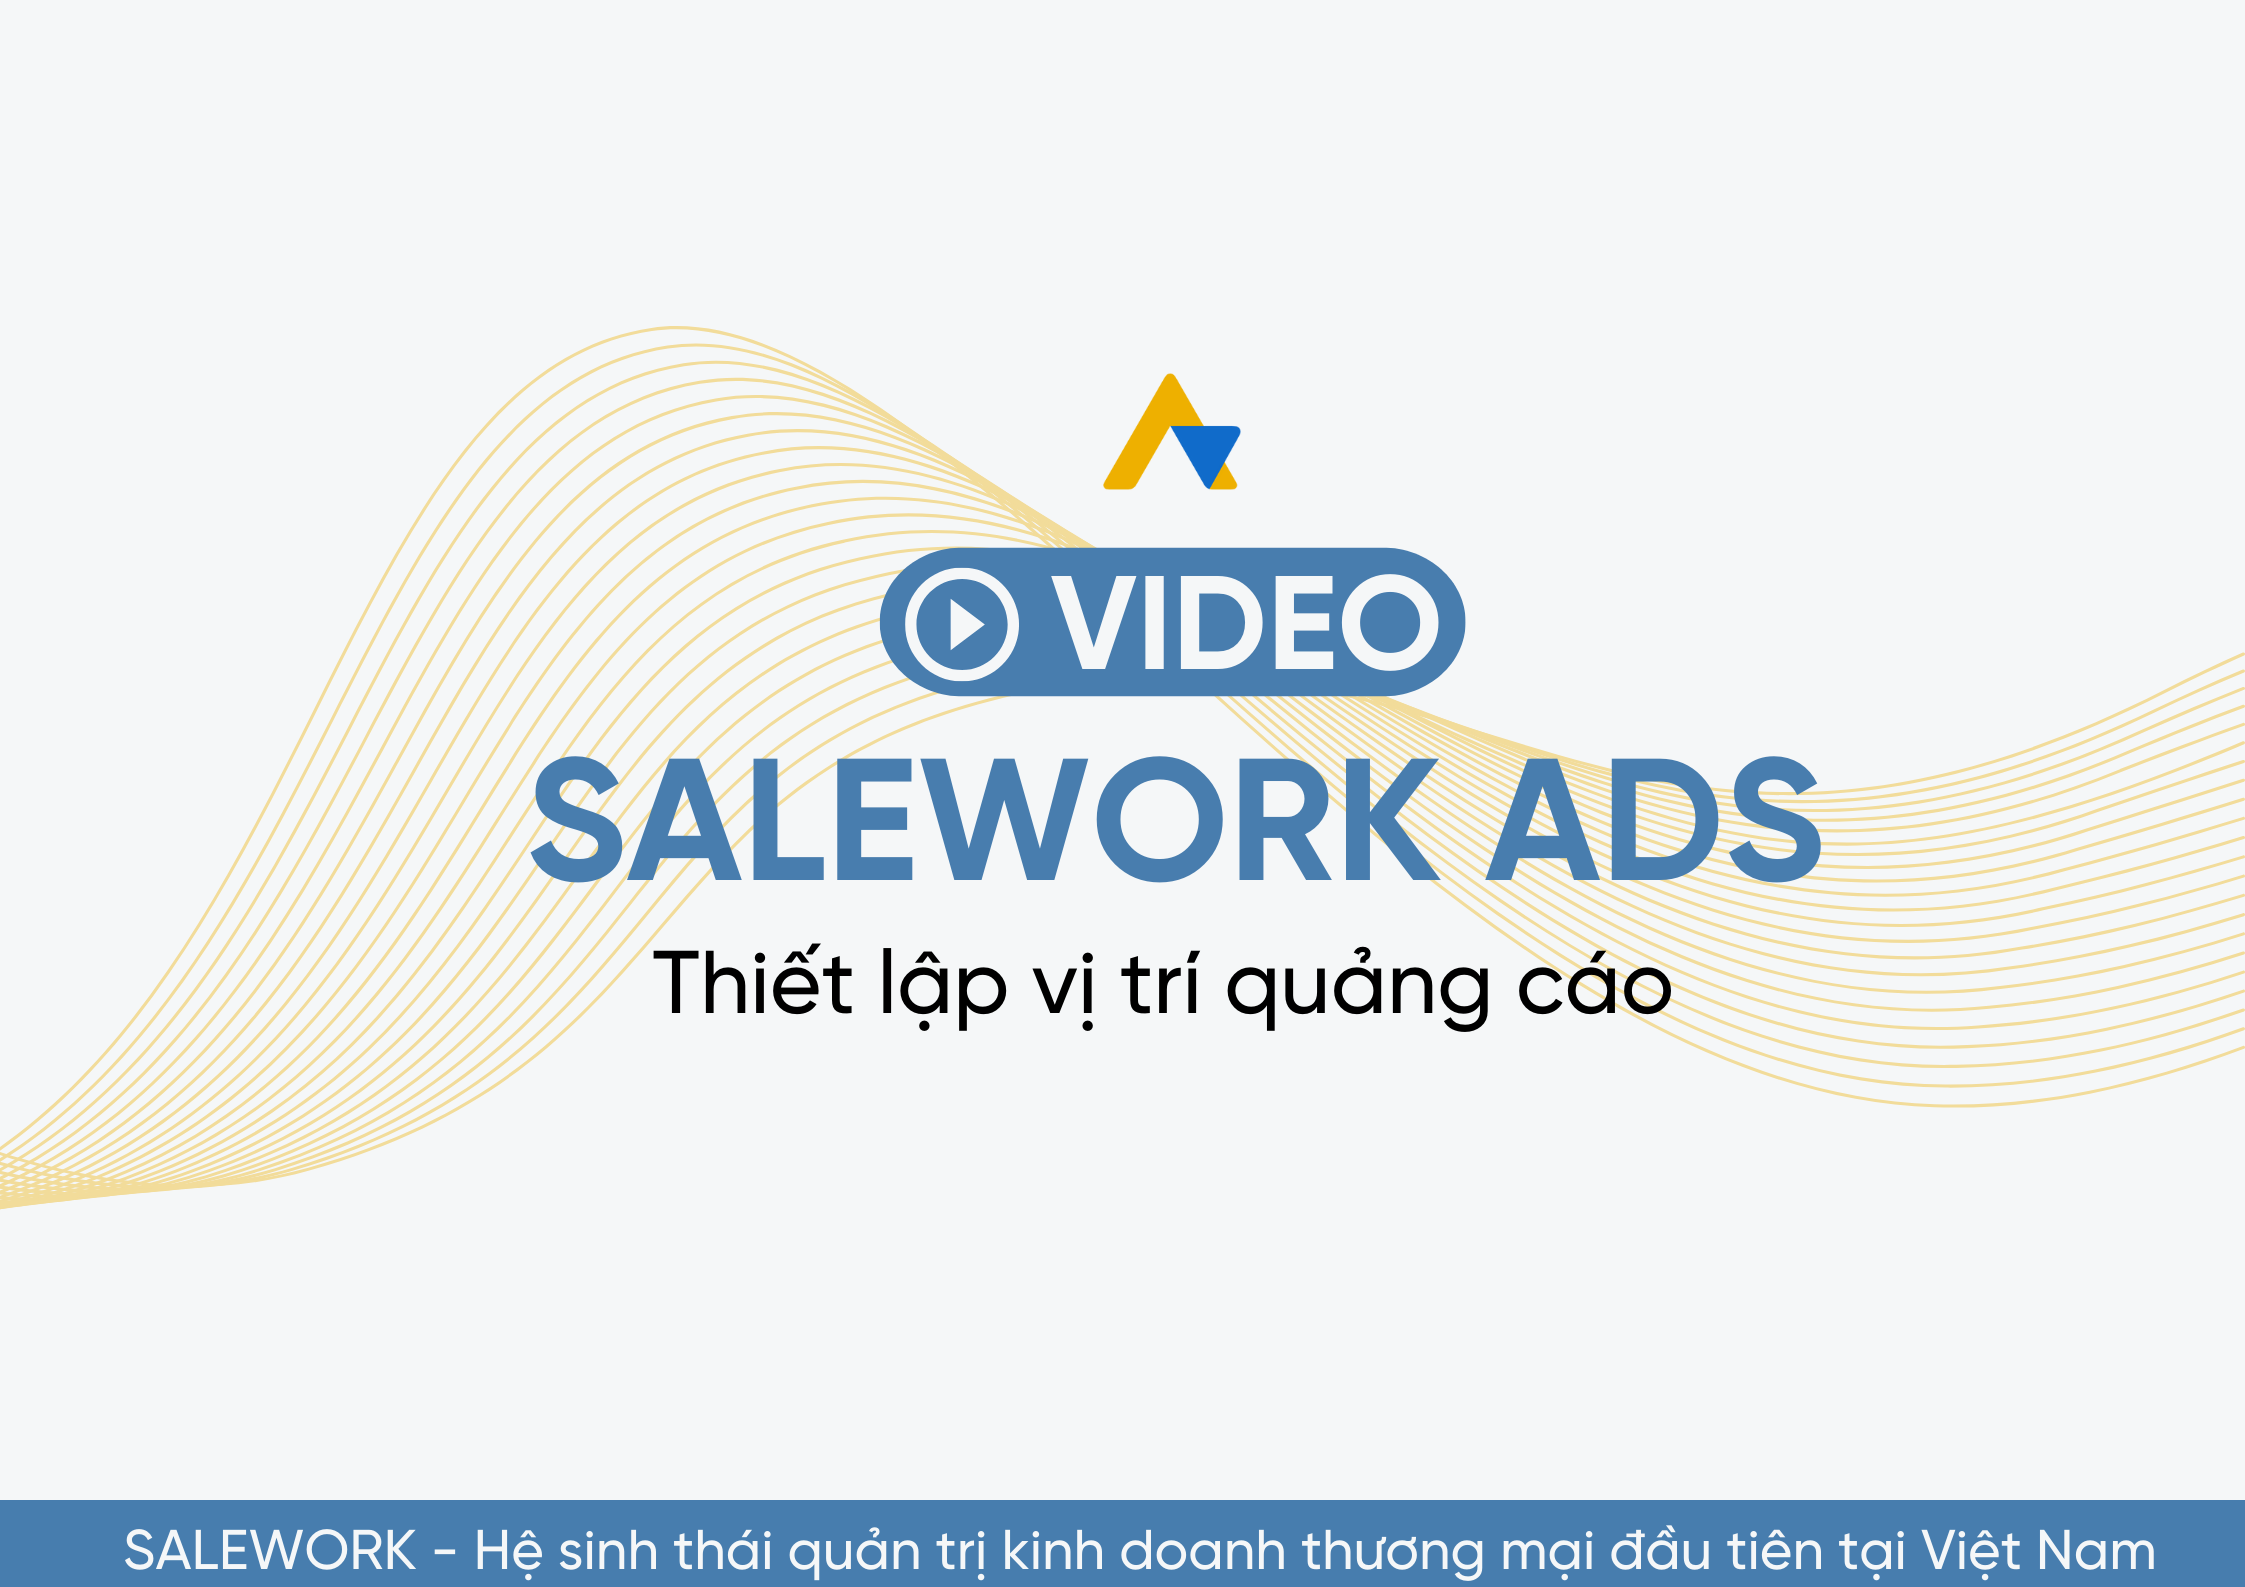 [VIDEO] Thiết lập vị trí quảng cáo tại Salework Ads - 18